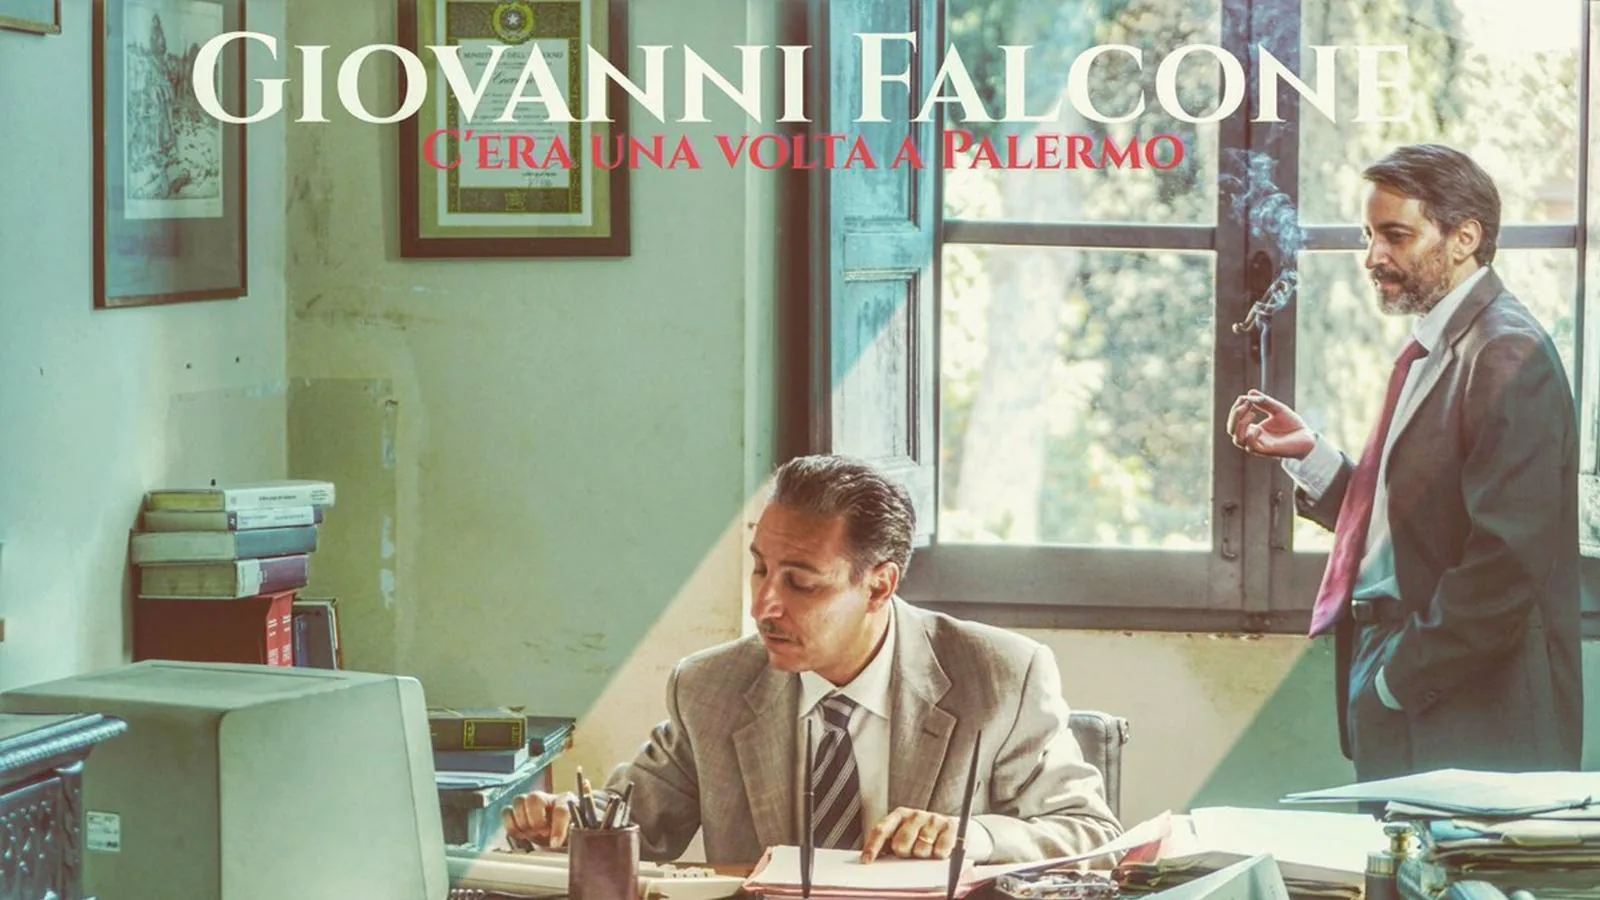 Vsoar e Giovanni Falcone RAI1